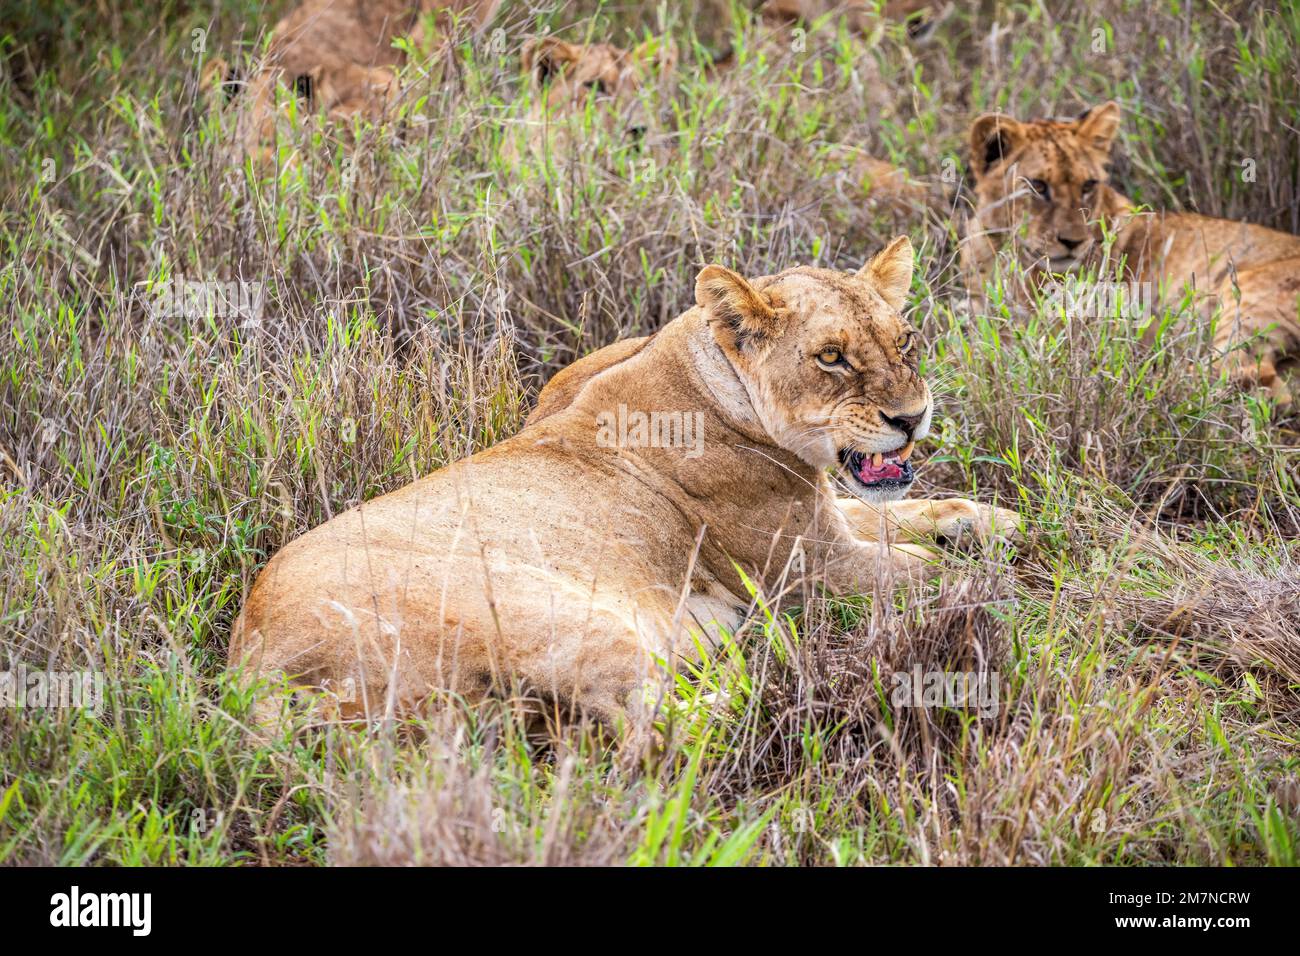 Löwenfamilie, Löwen im Gras der Savanne. Wir haben eine Safari durch den Tsavo West Nationalpark, Taita Hills, Tsavo, Kenia, Afrika gemacht Stockfoto